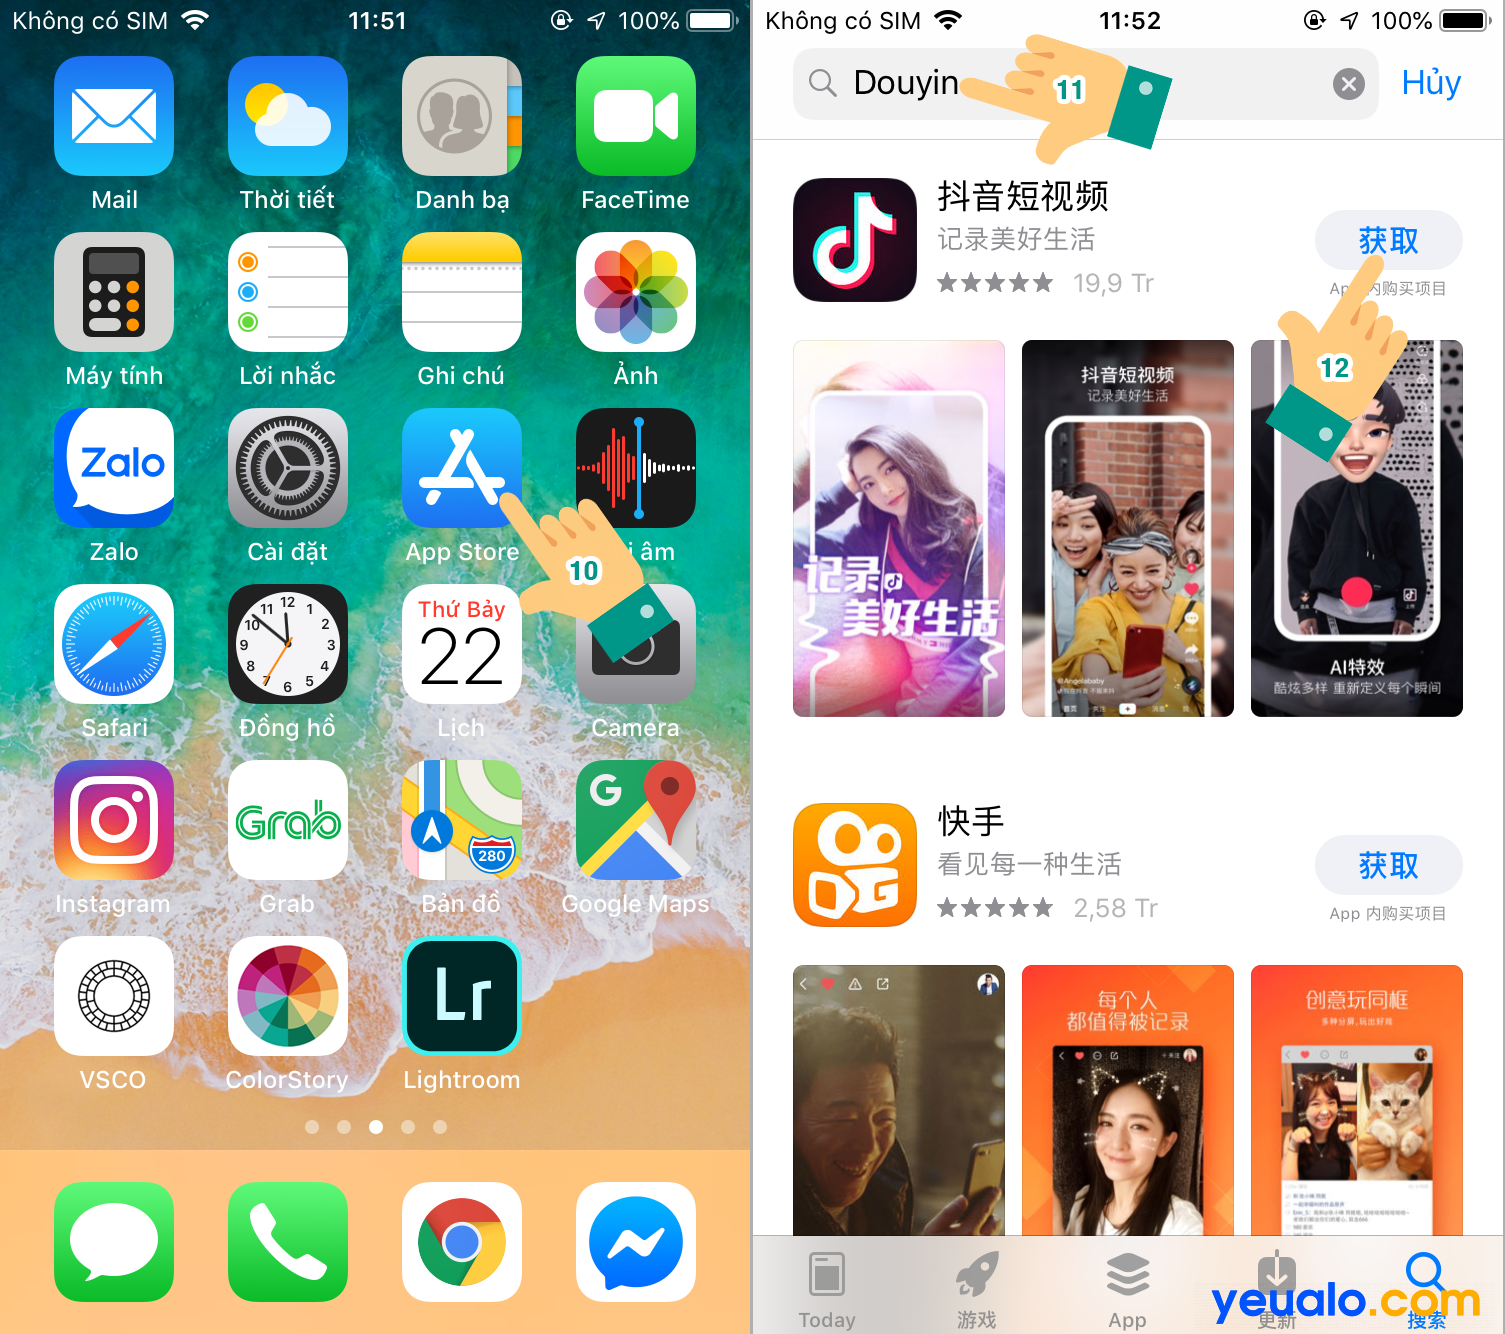 Cách tải Tik Tok Trung Quốc cho iPhone 5